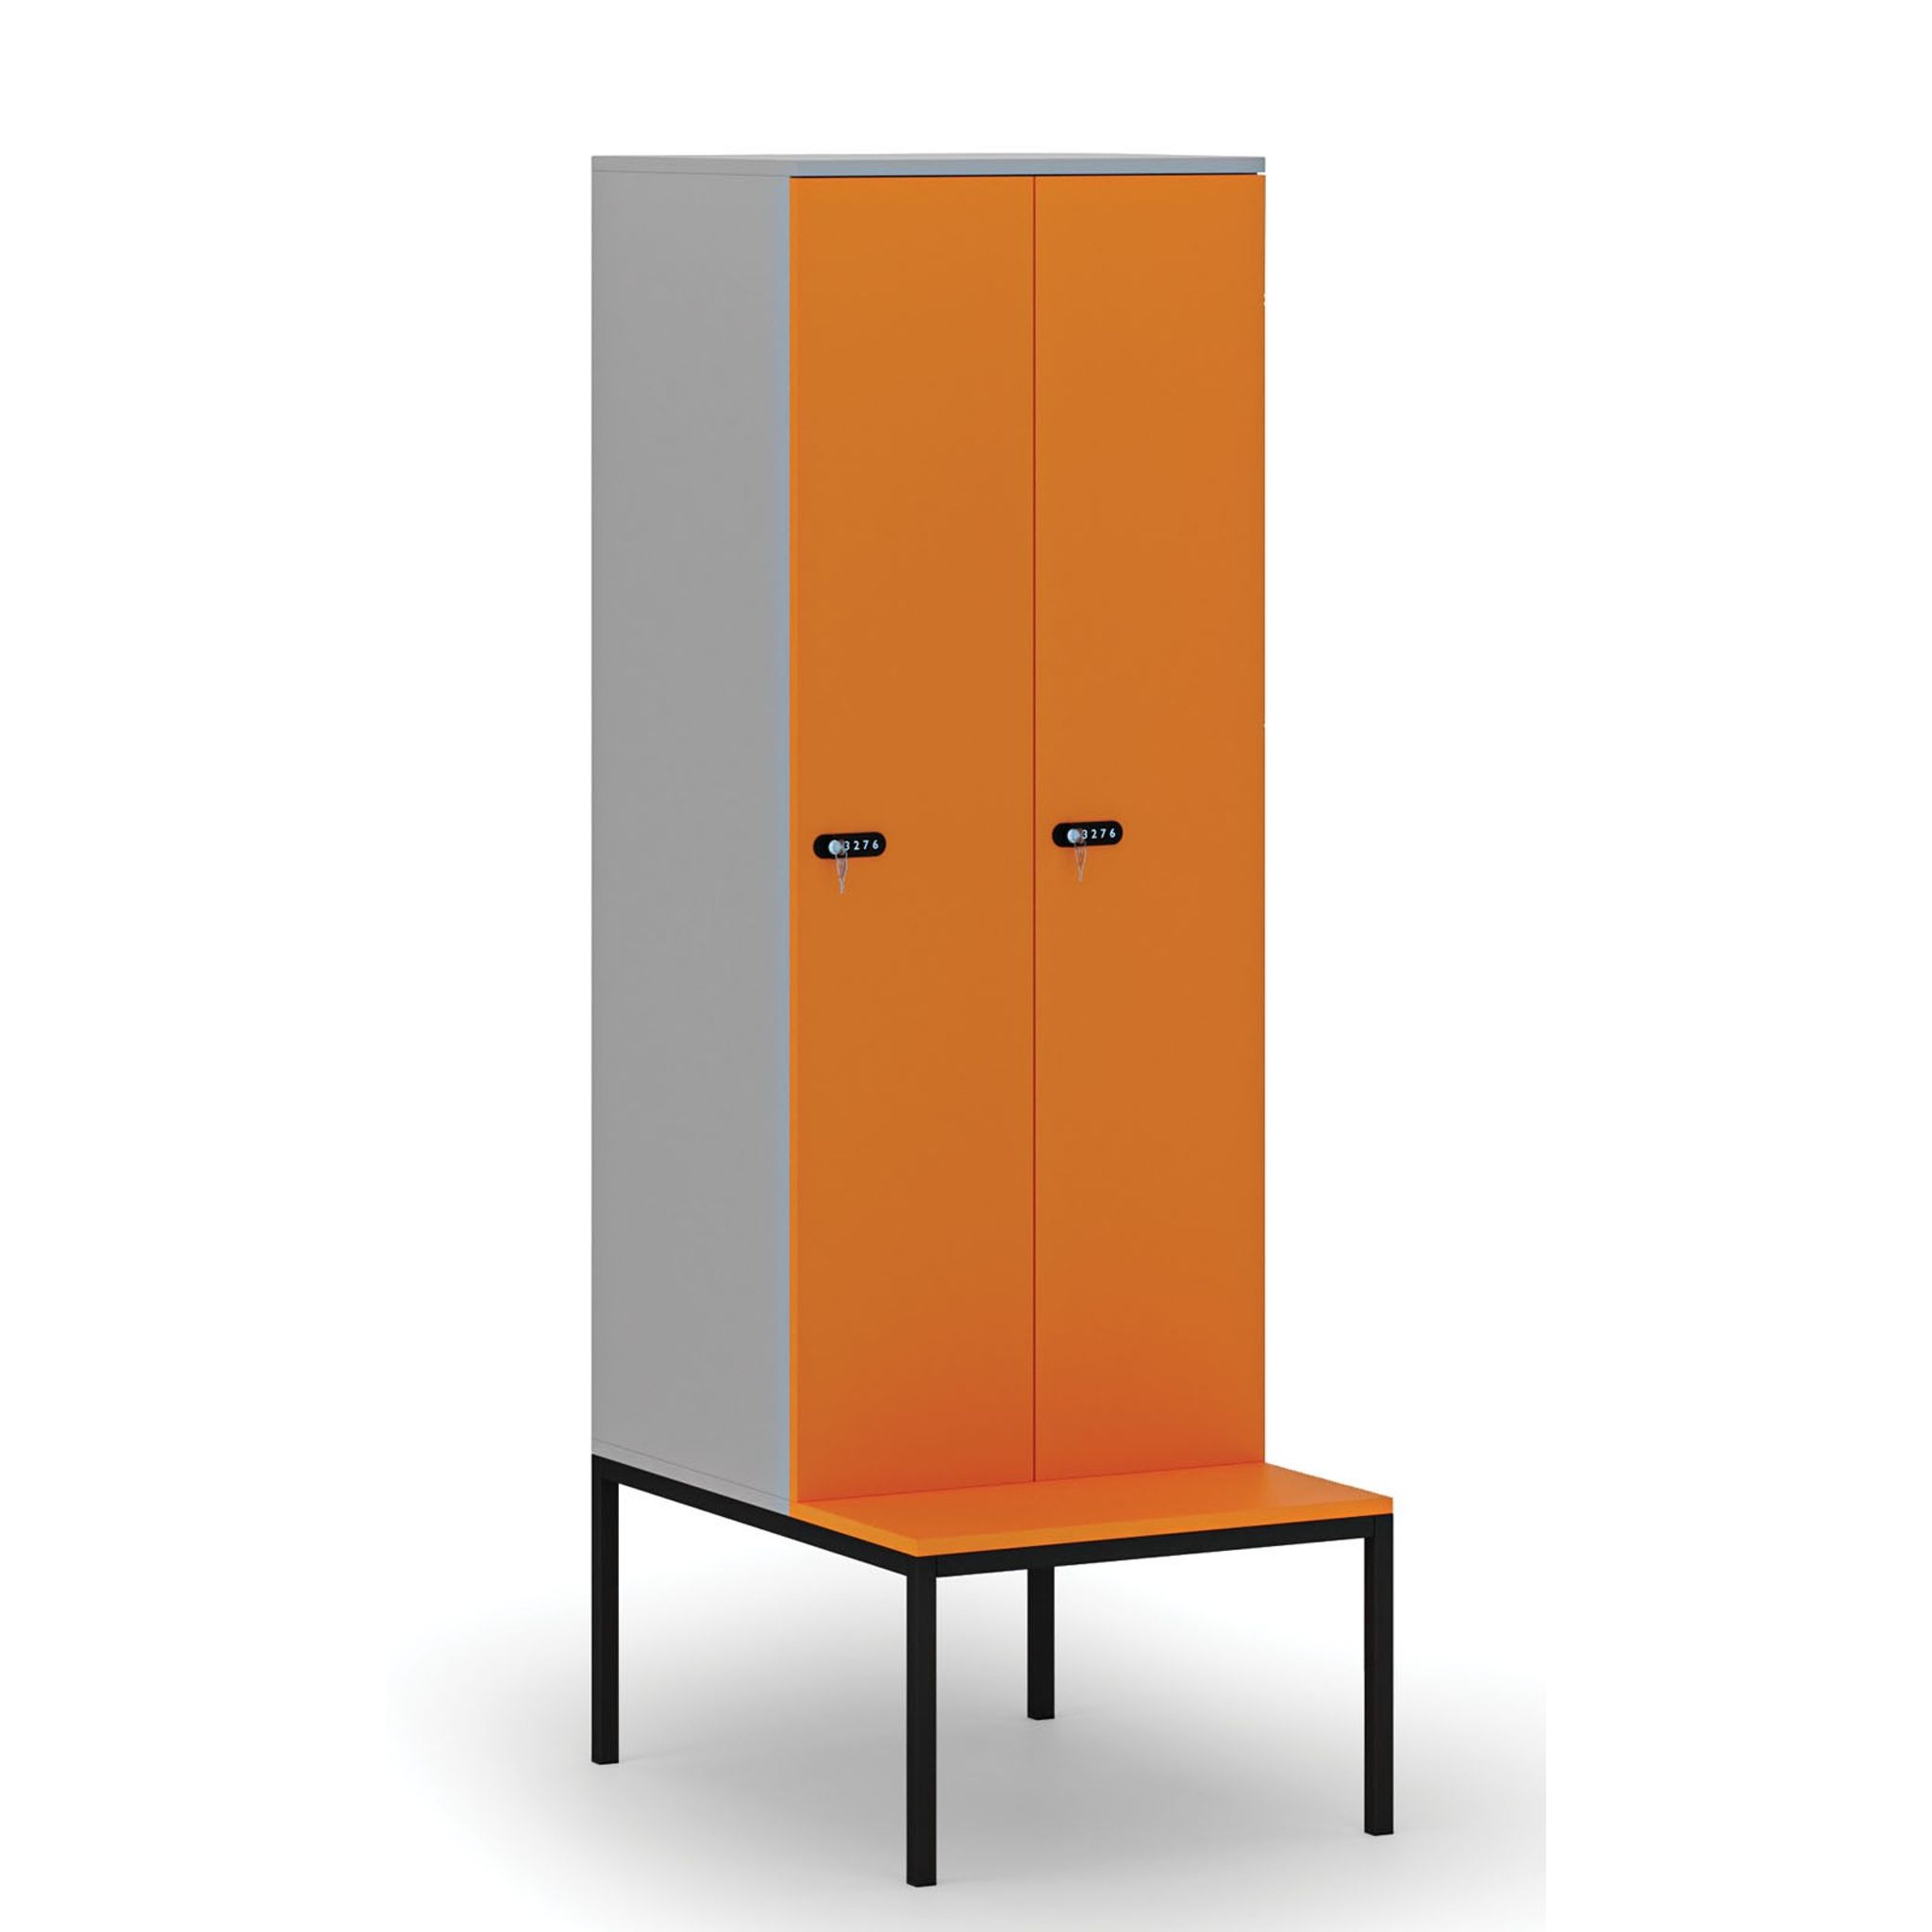 Dřevěná šatní skříňka s lavičkou, 2 oddíly, mechanický kódový zámek, šedá/oranžová